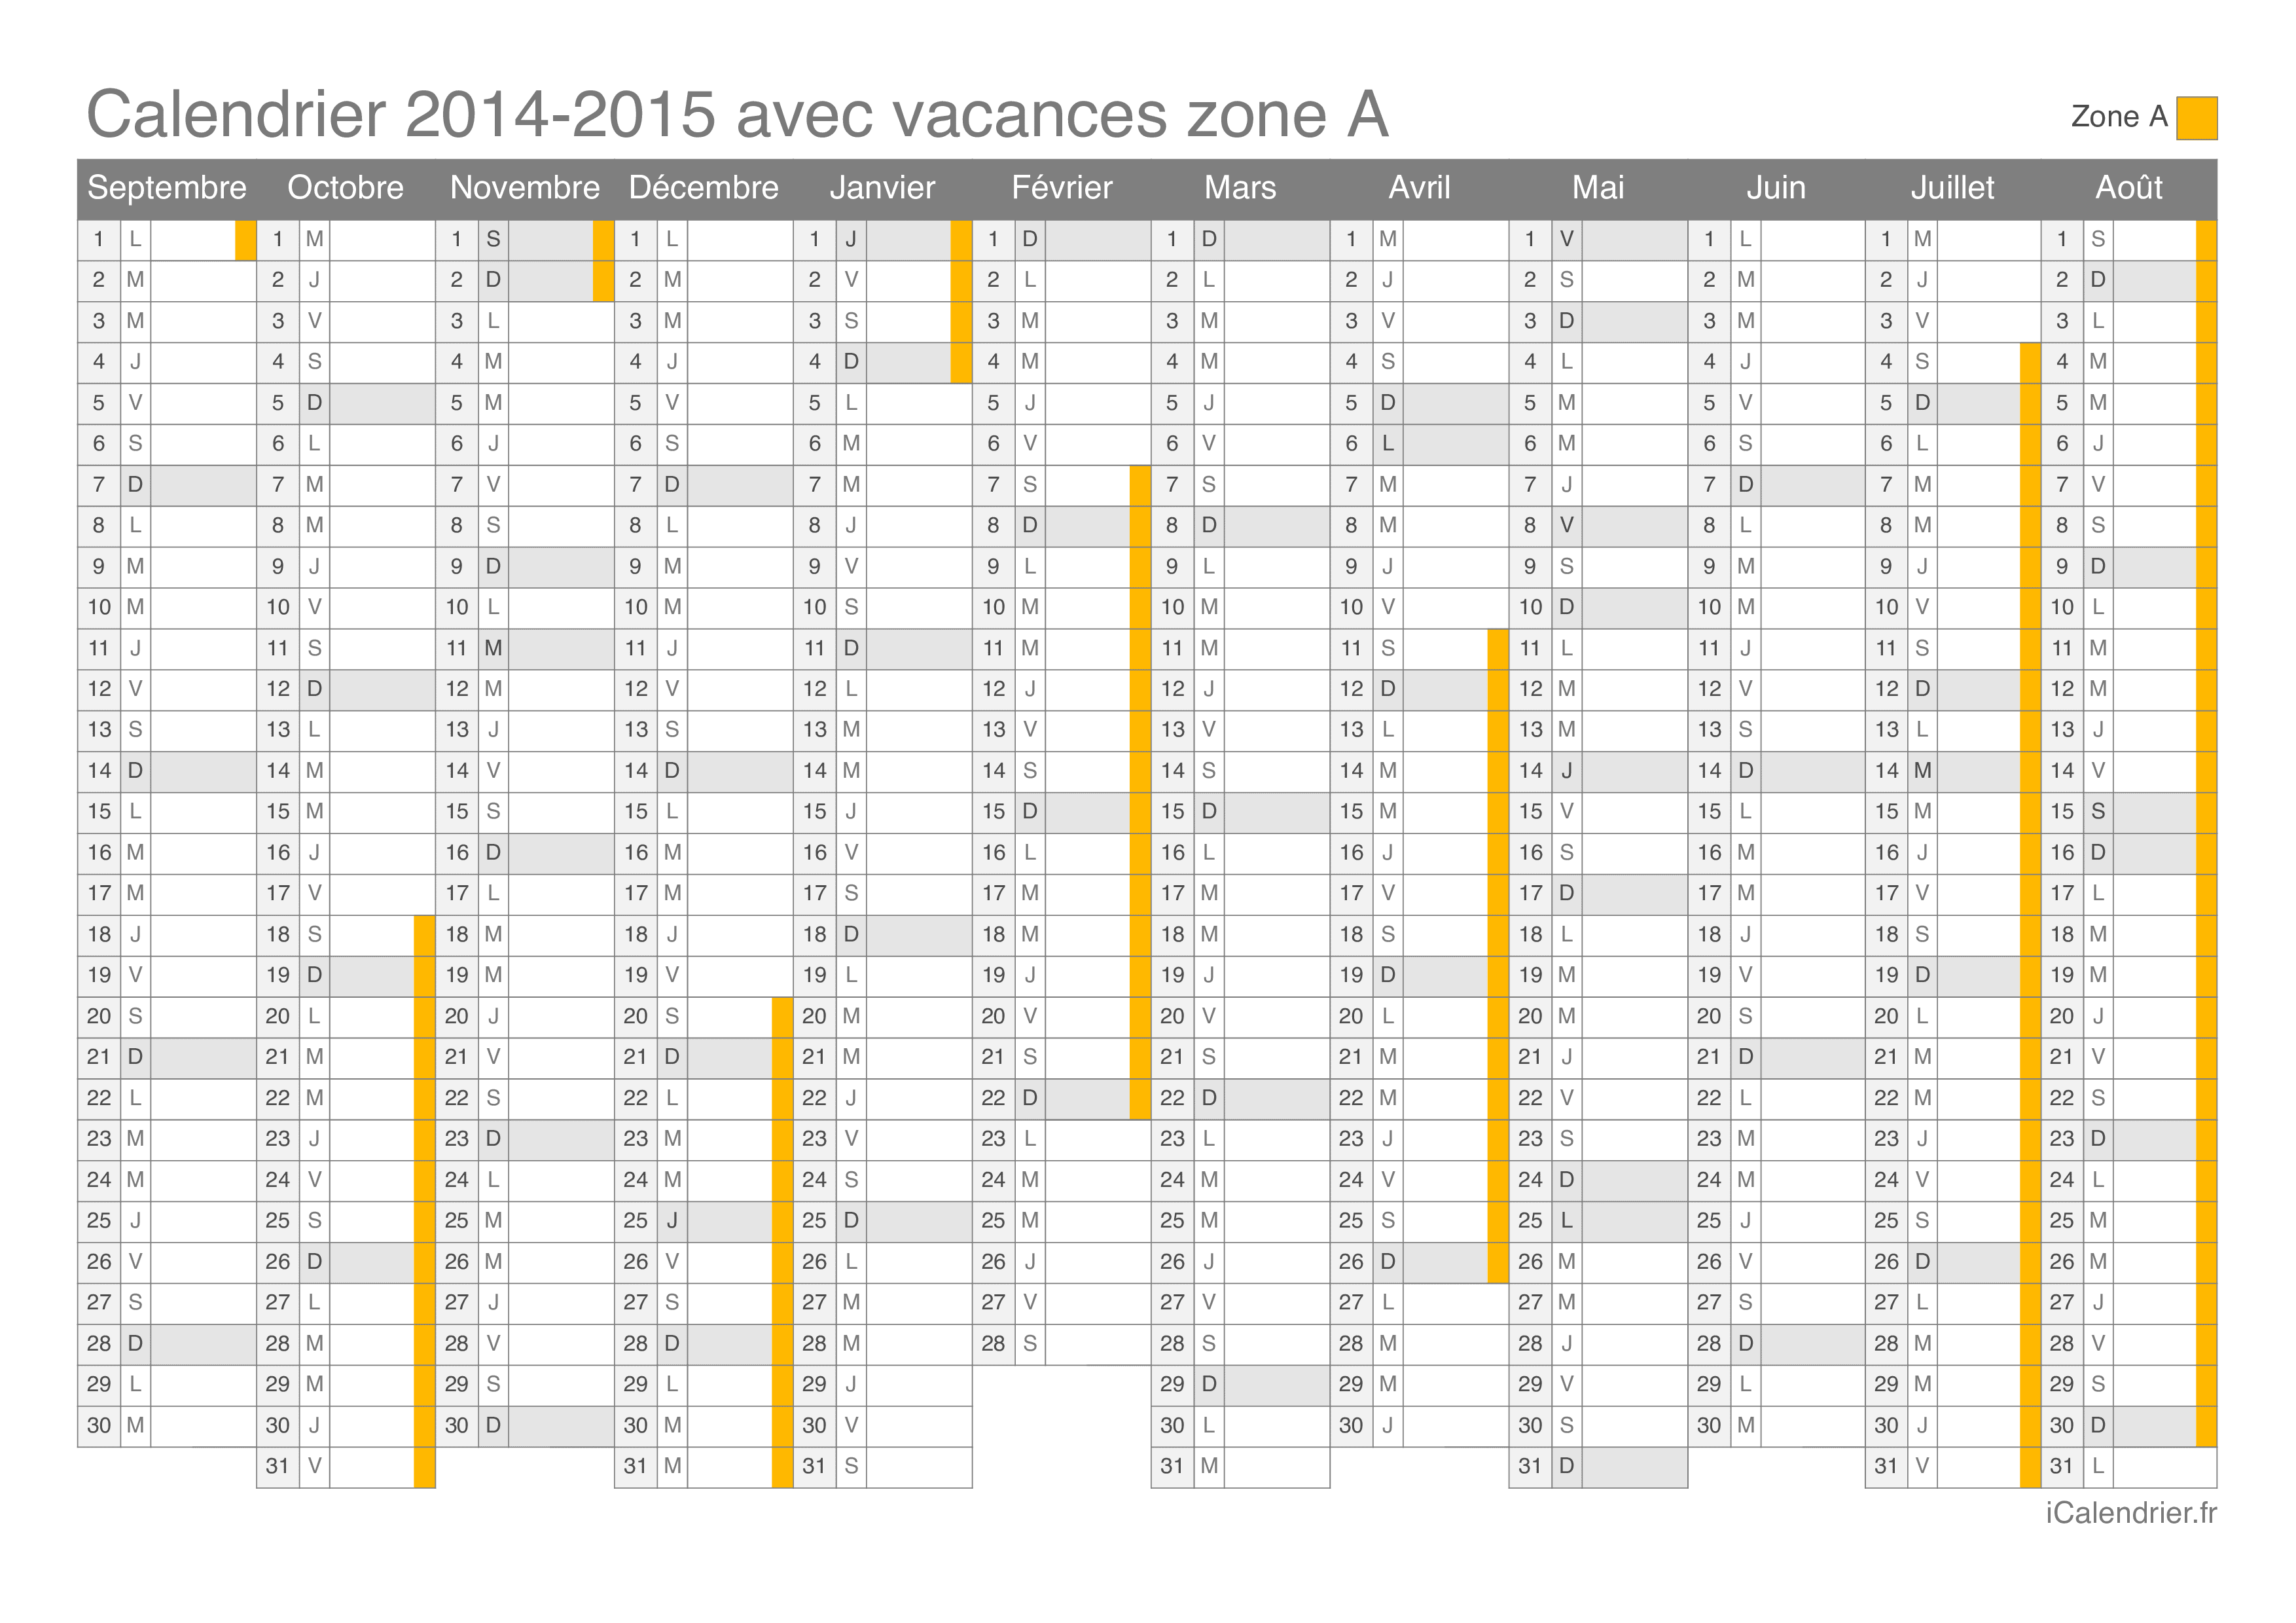 Calendrier des vacances scolaires 2014-2015 de la zone A